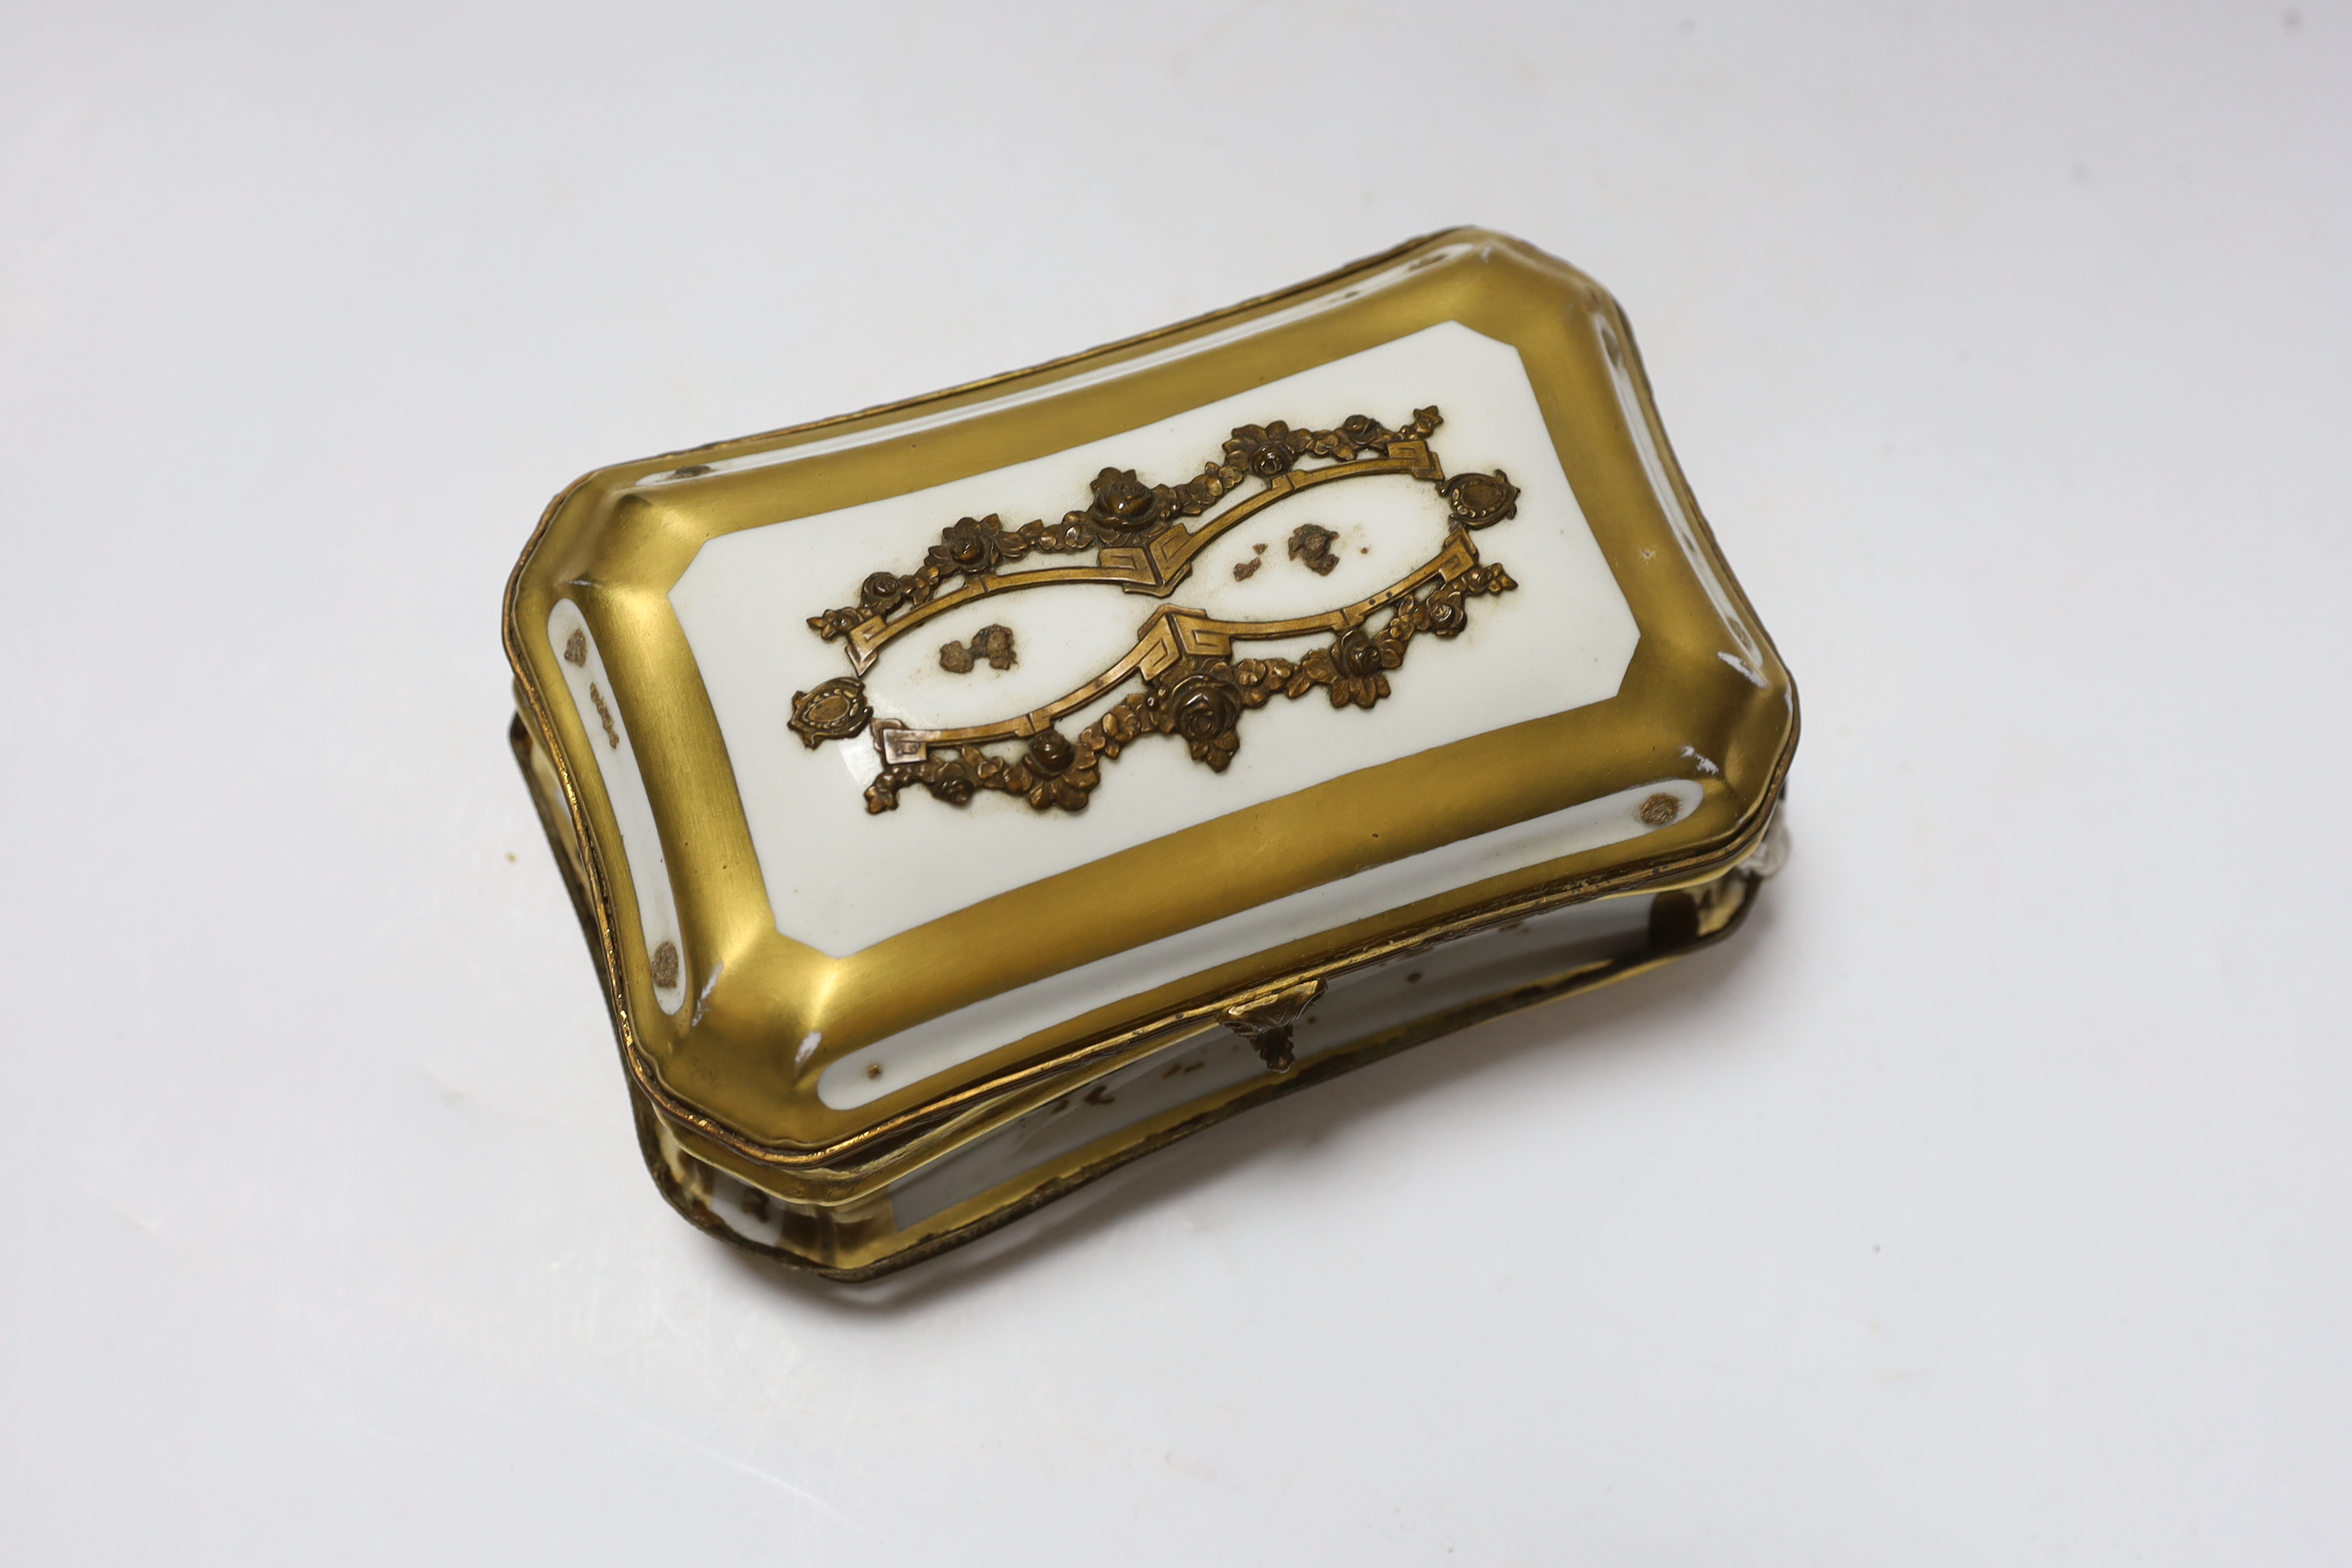 A Sevres style porcelain casket - Image 2 of 4